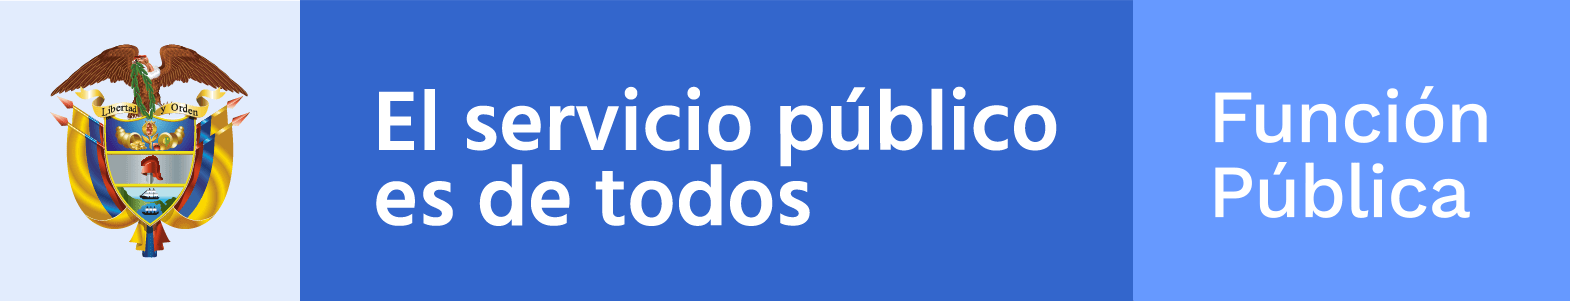 Logo Función Pública